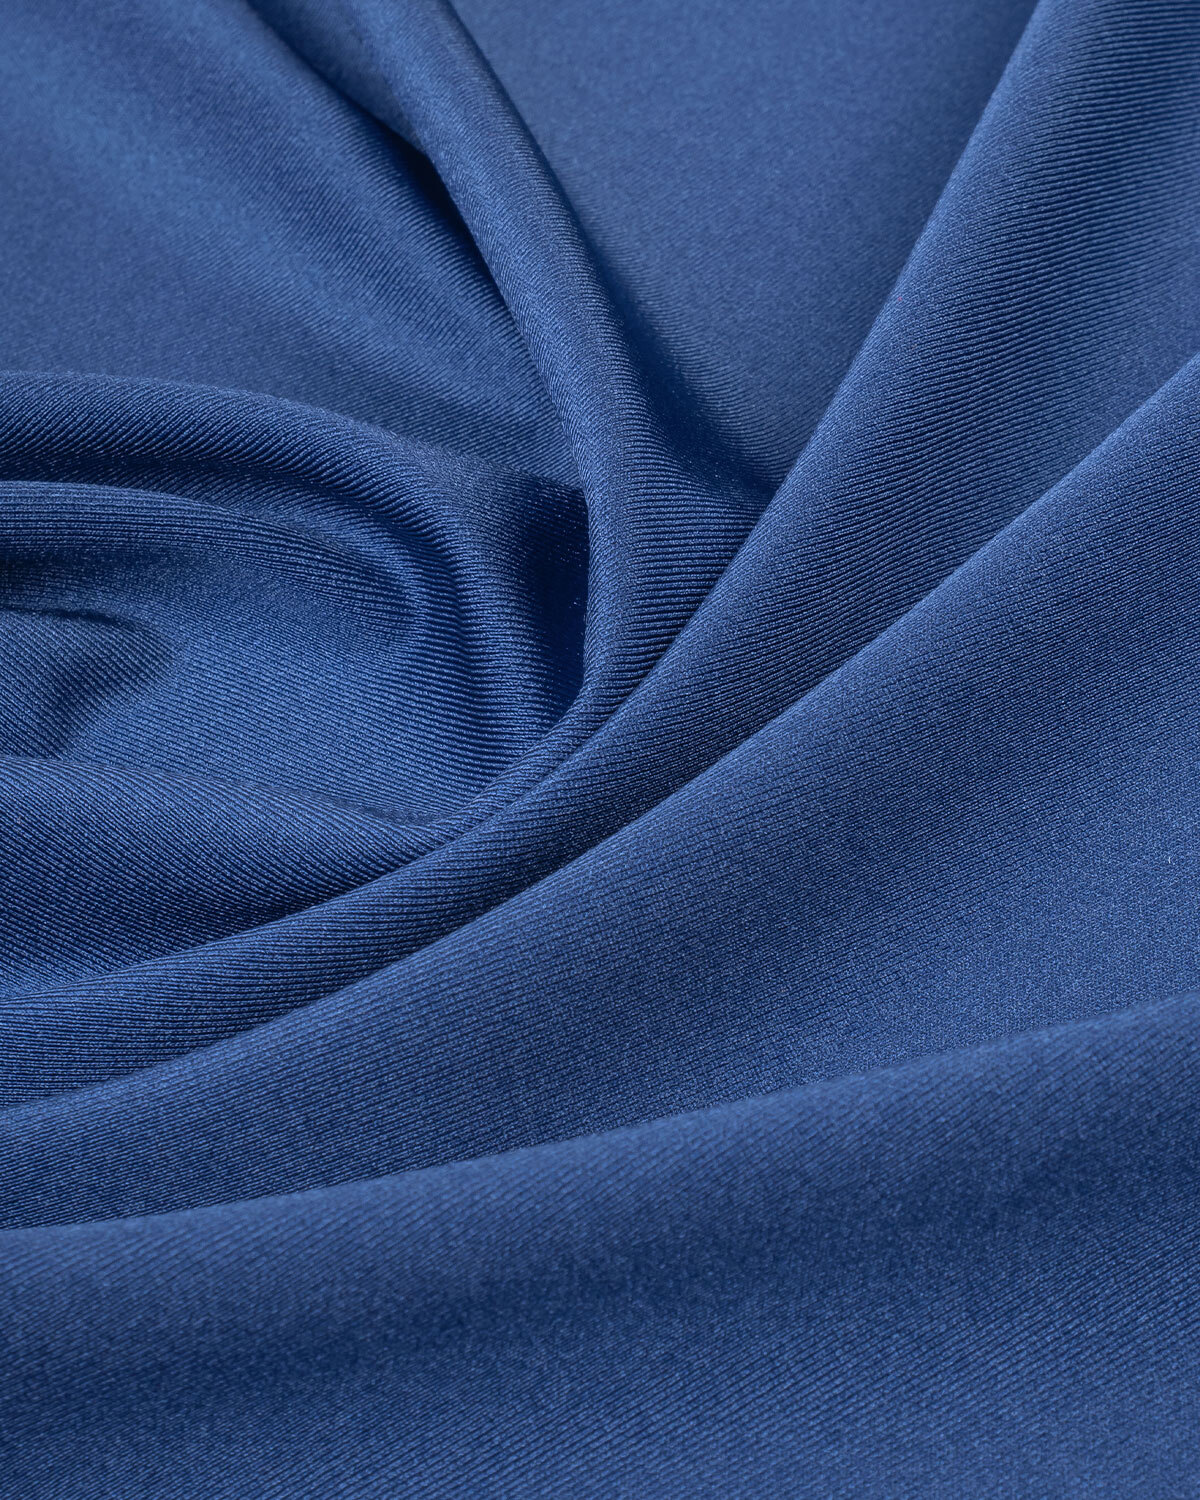 Ткани трикотаж синего цвета. Джерси синего цвета ткань. Трикотажная синяя ткань. Полотно трикотажное цвет электрик. Плотность нейлона